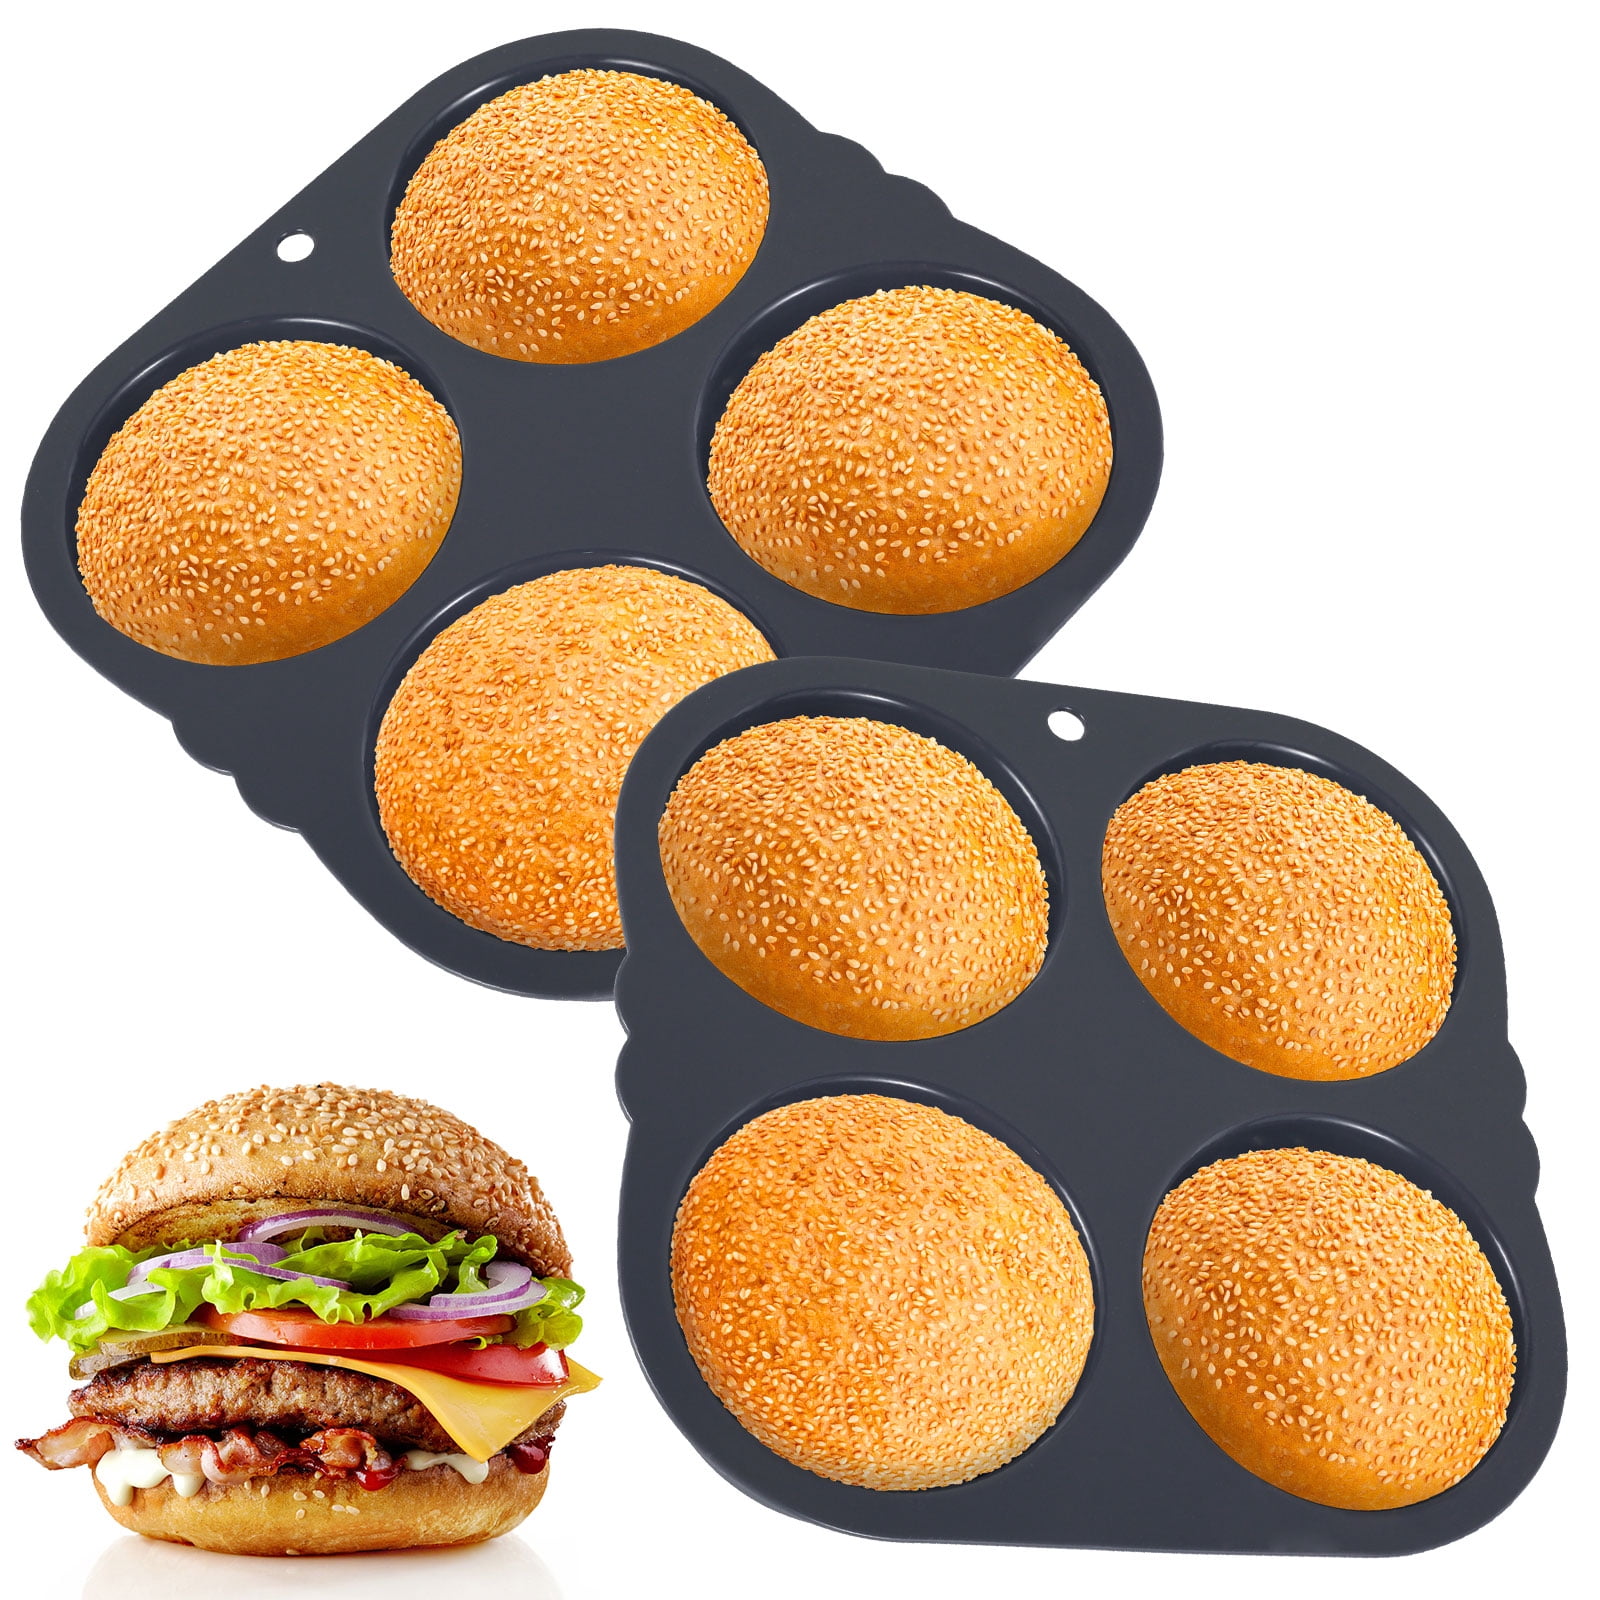 Cheap Hamburger Bun Pan, 4 Cup Big Baking Pan for Homemade Hamburger Buns,  4 Inch Silicone Hamburger Bun Mold, Dishwasher Safe and BPA-Free